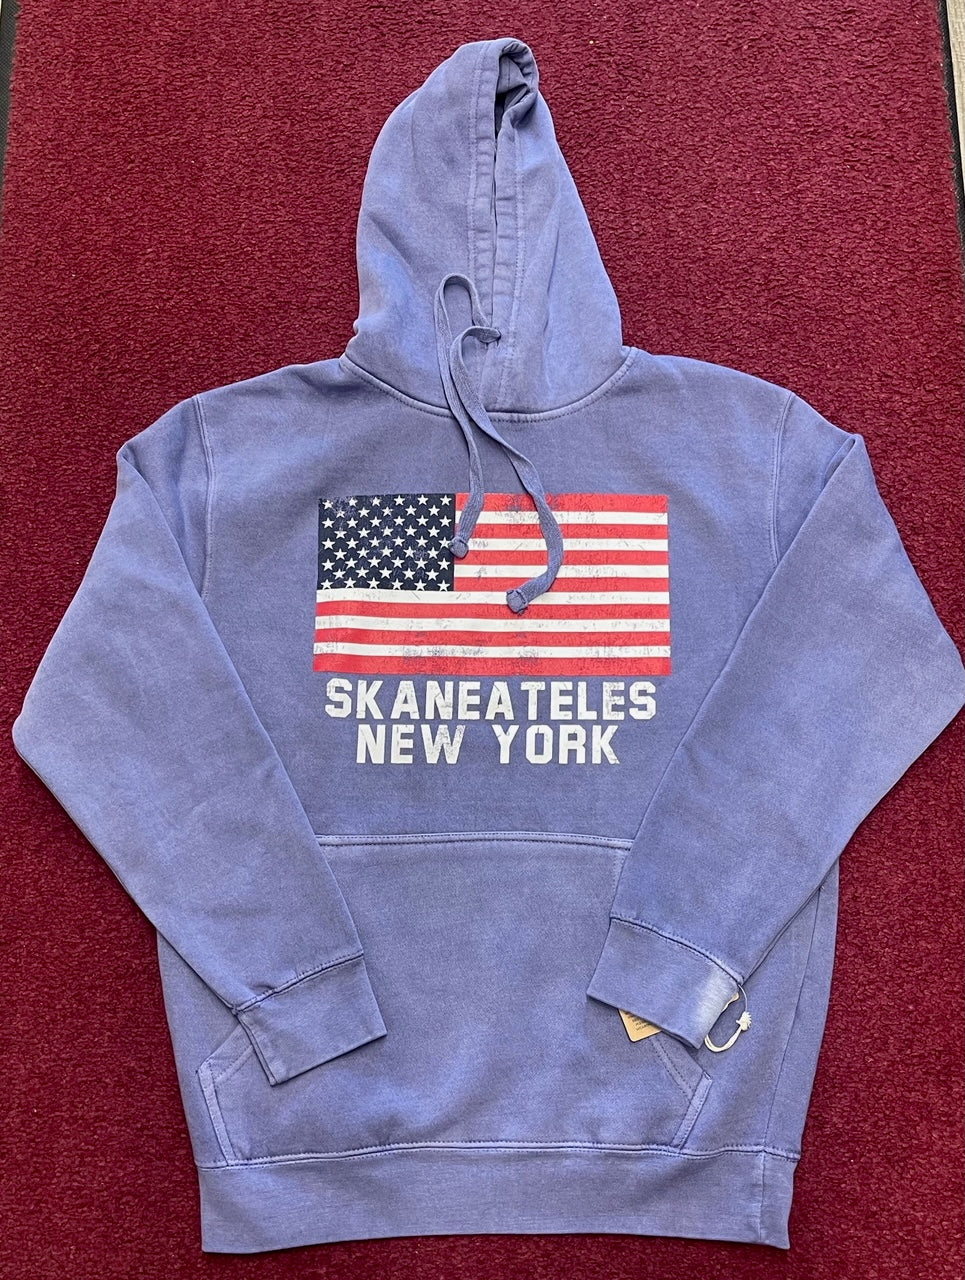 Skaneateles Pullover Hooded American Flag Sweatshirt - Men's